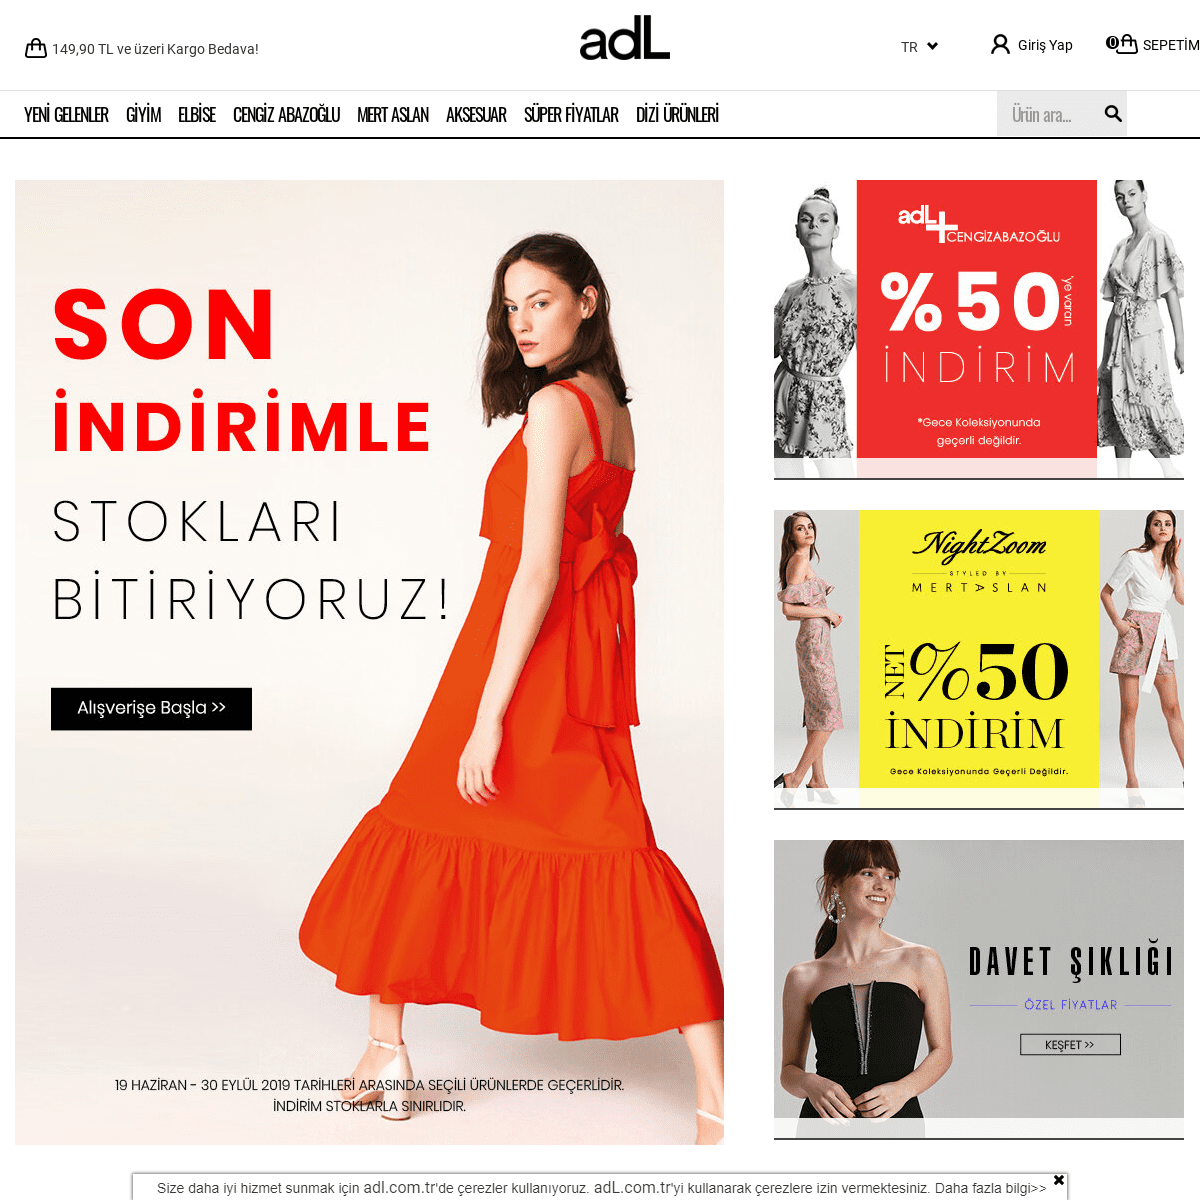 adL.com.tr